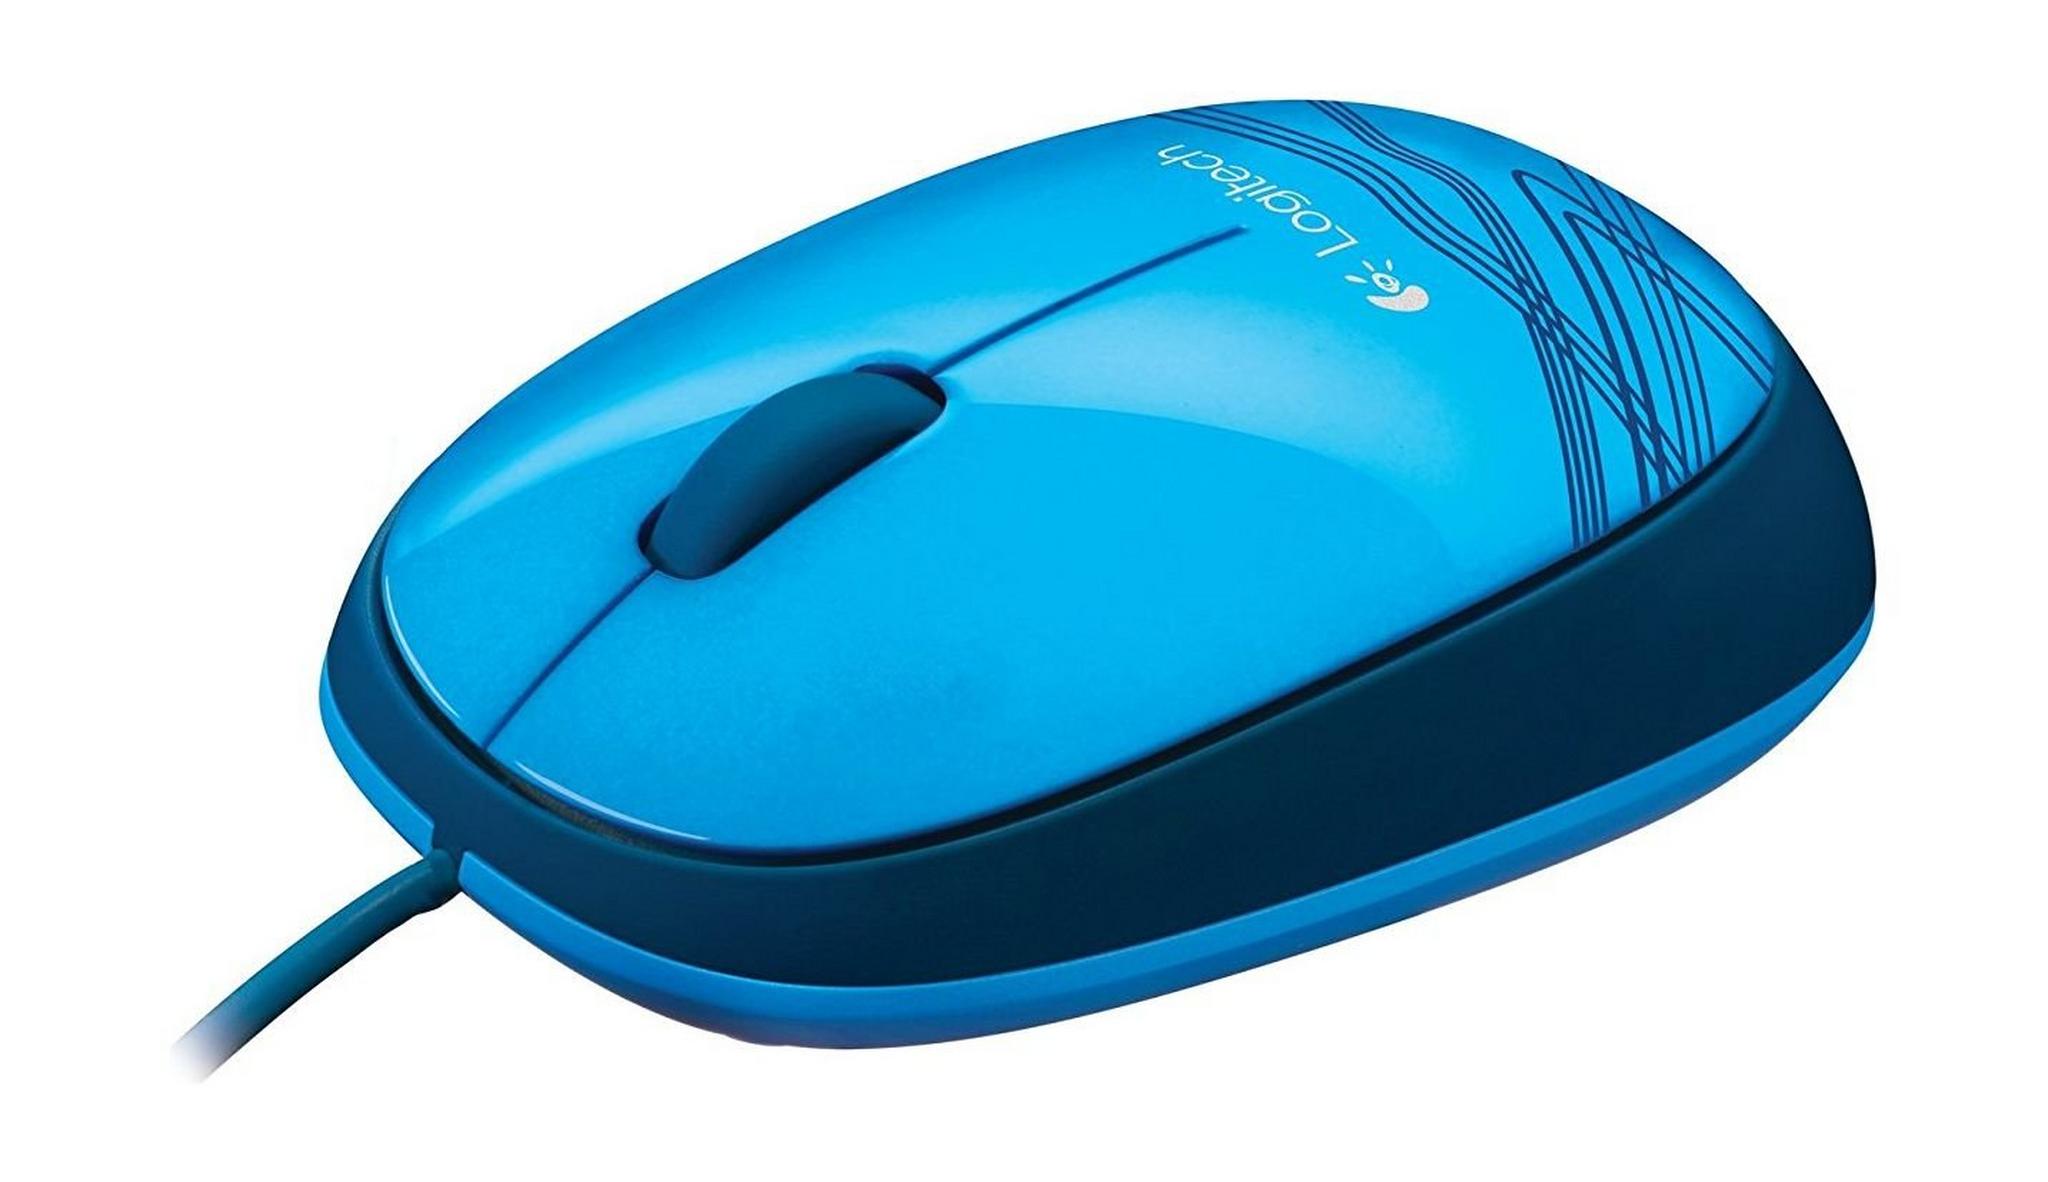 Logitech M105 Corded Optical Mouse - Blue (910-003114)